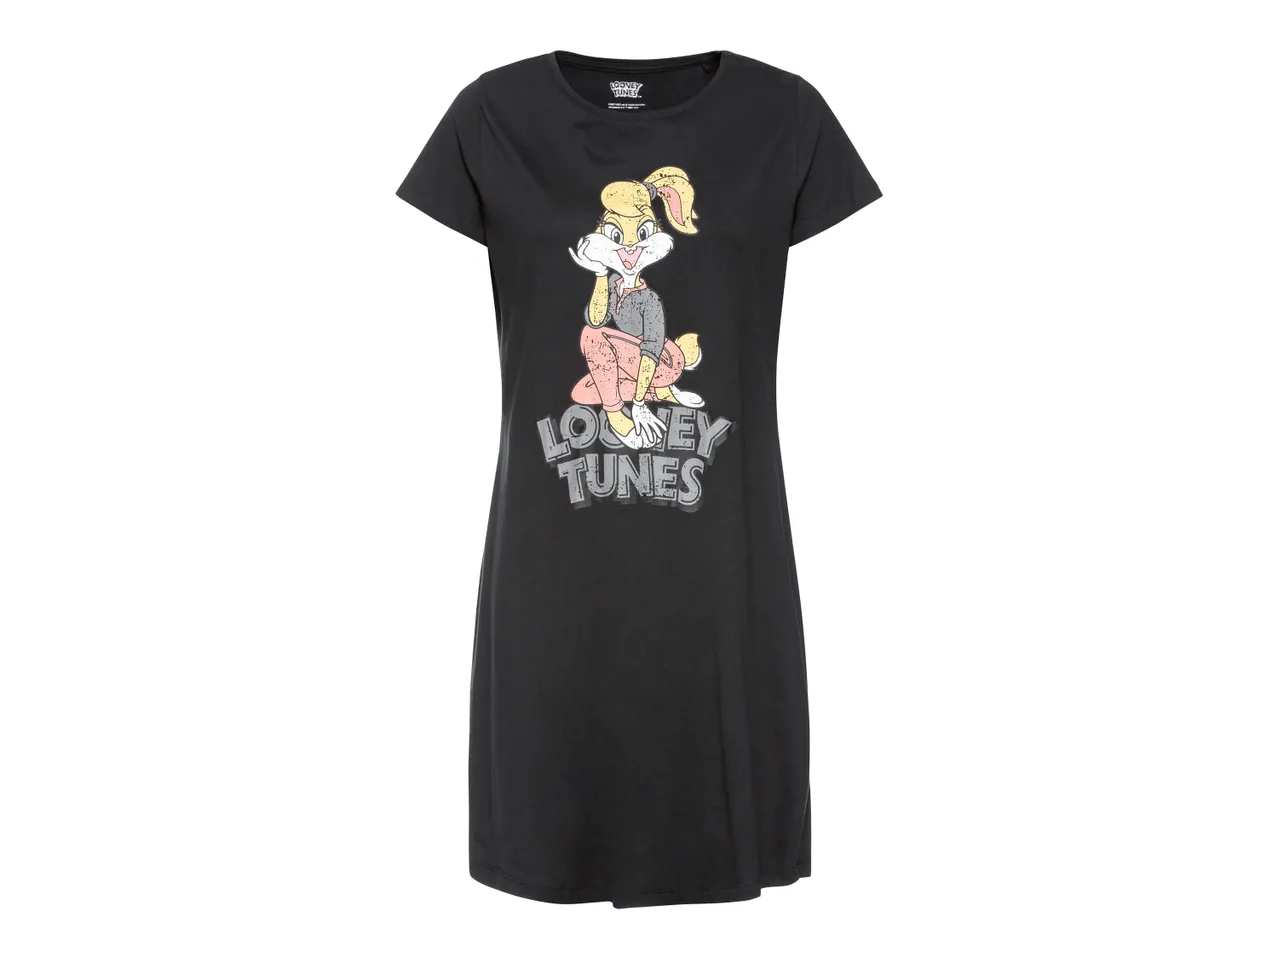 Maxi t-shirt da donna Peanuts, Pantera , prezzo 7.99 EUR